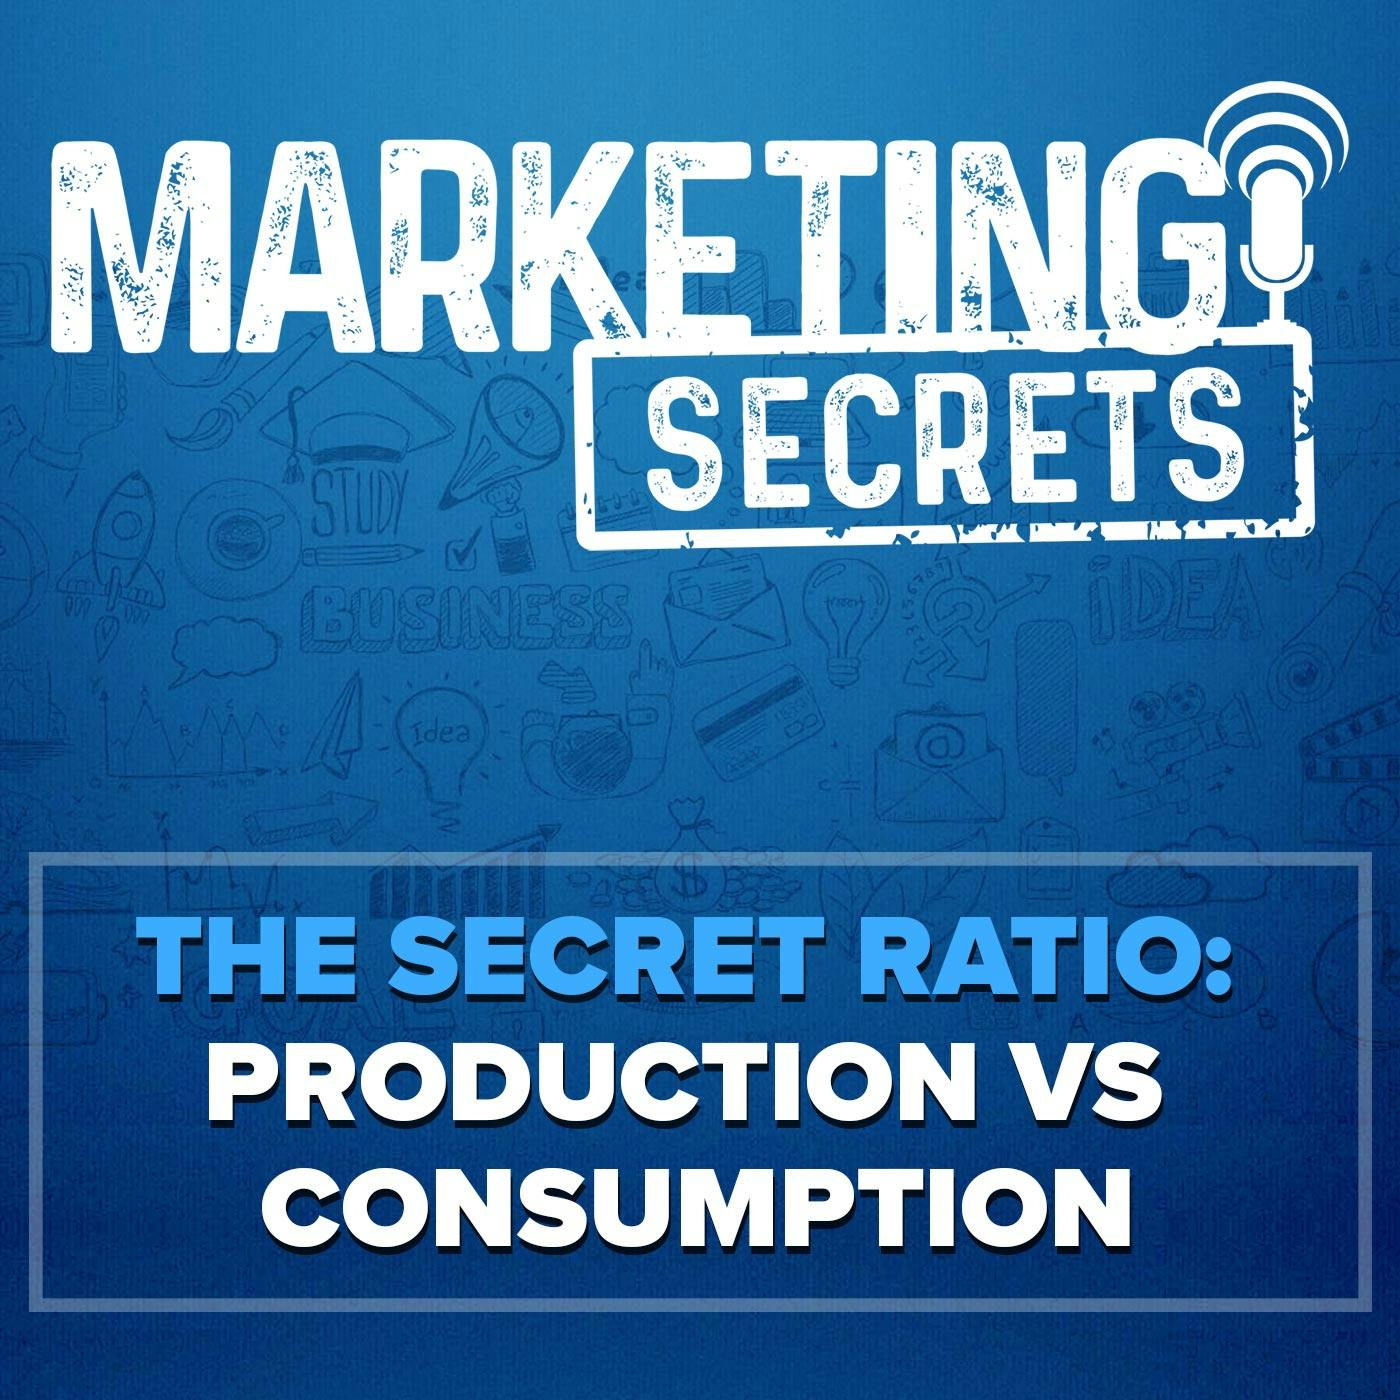 The Secret Ratio: Production Vs Consumption